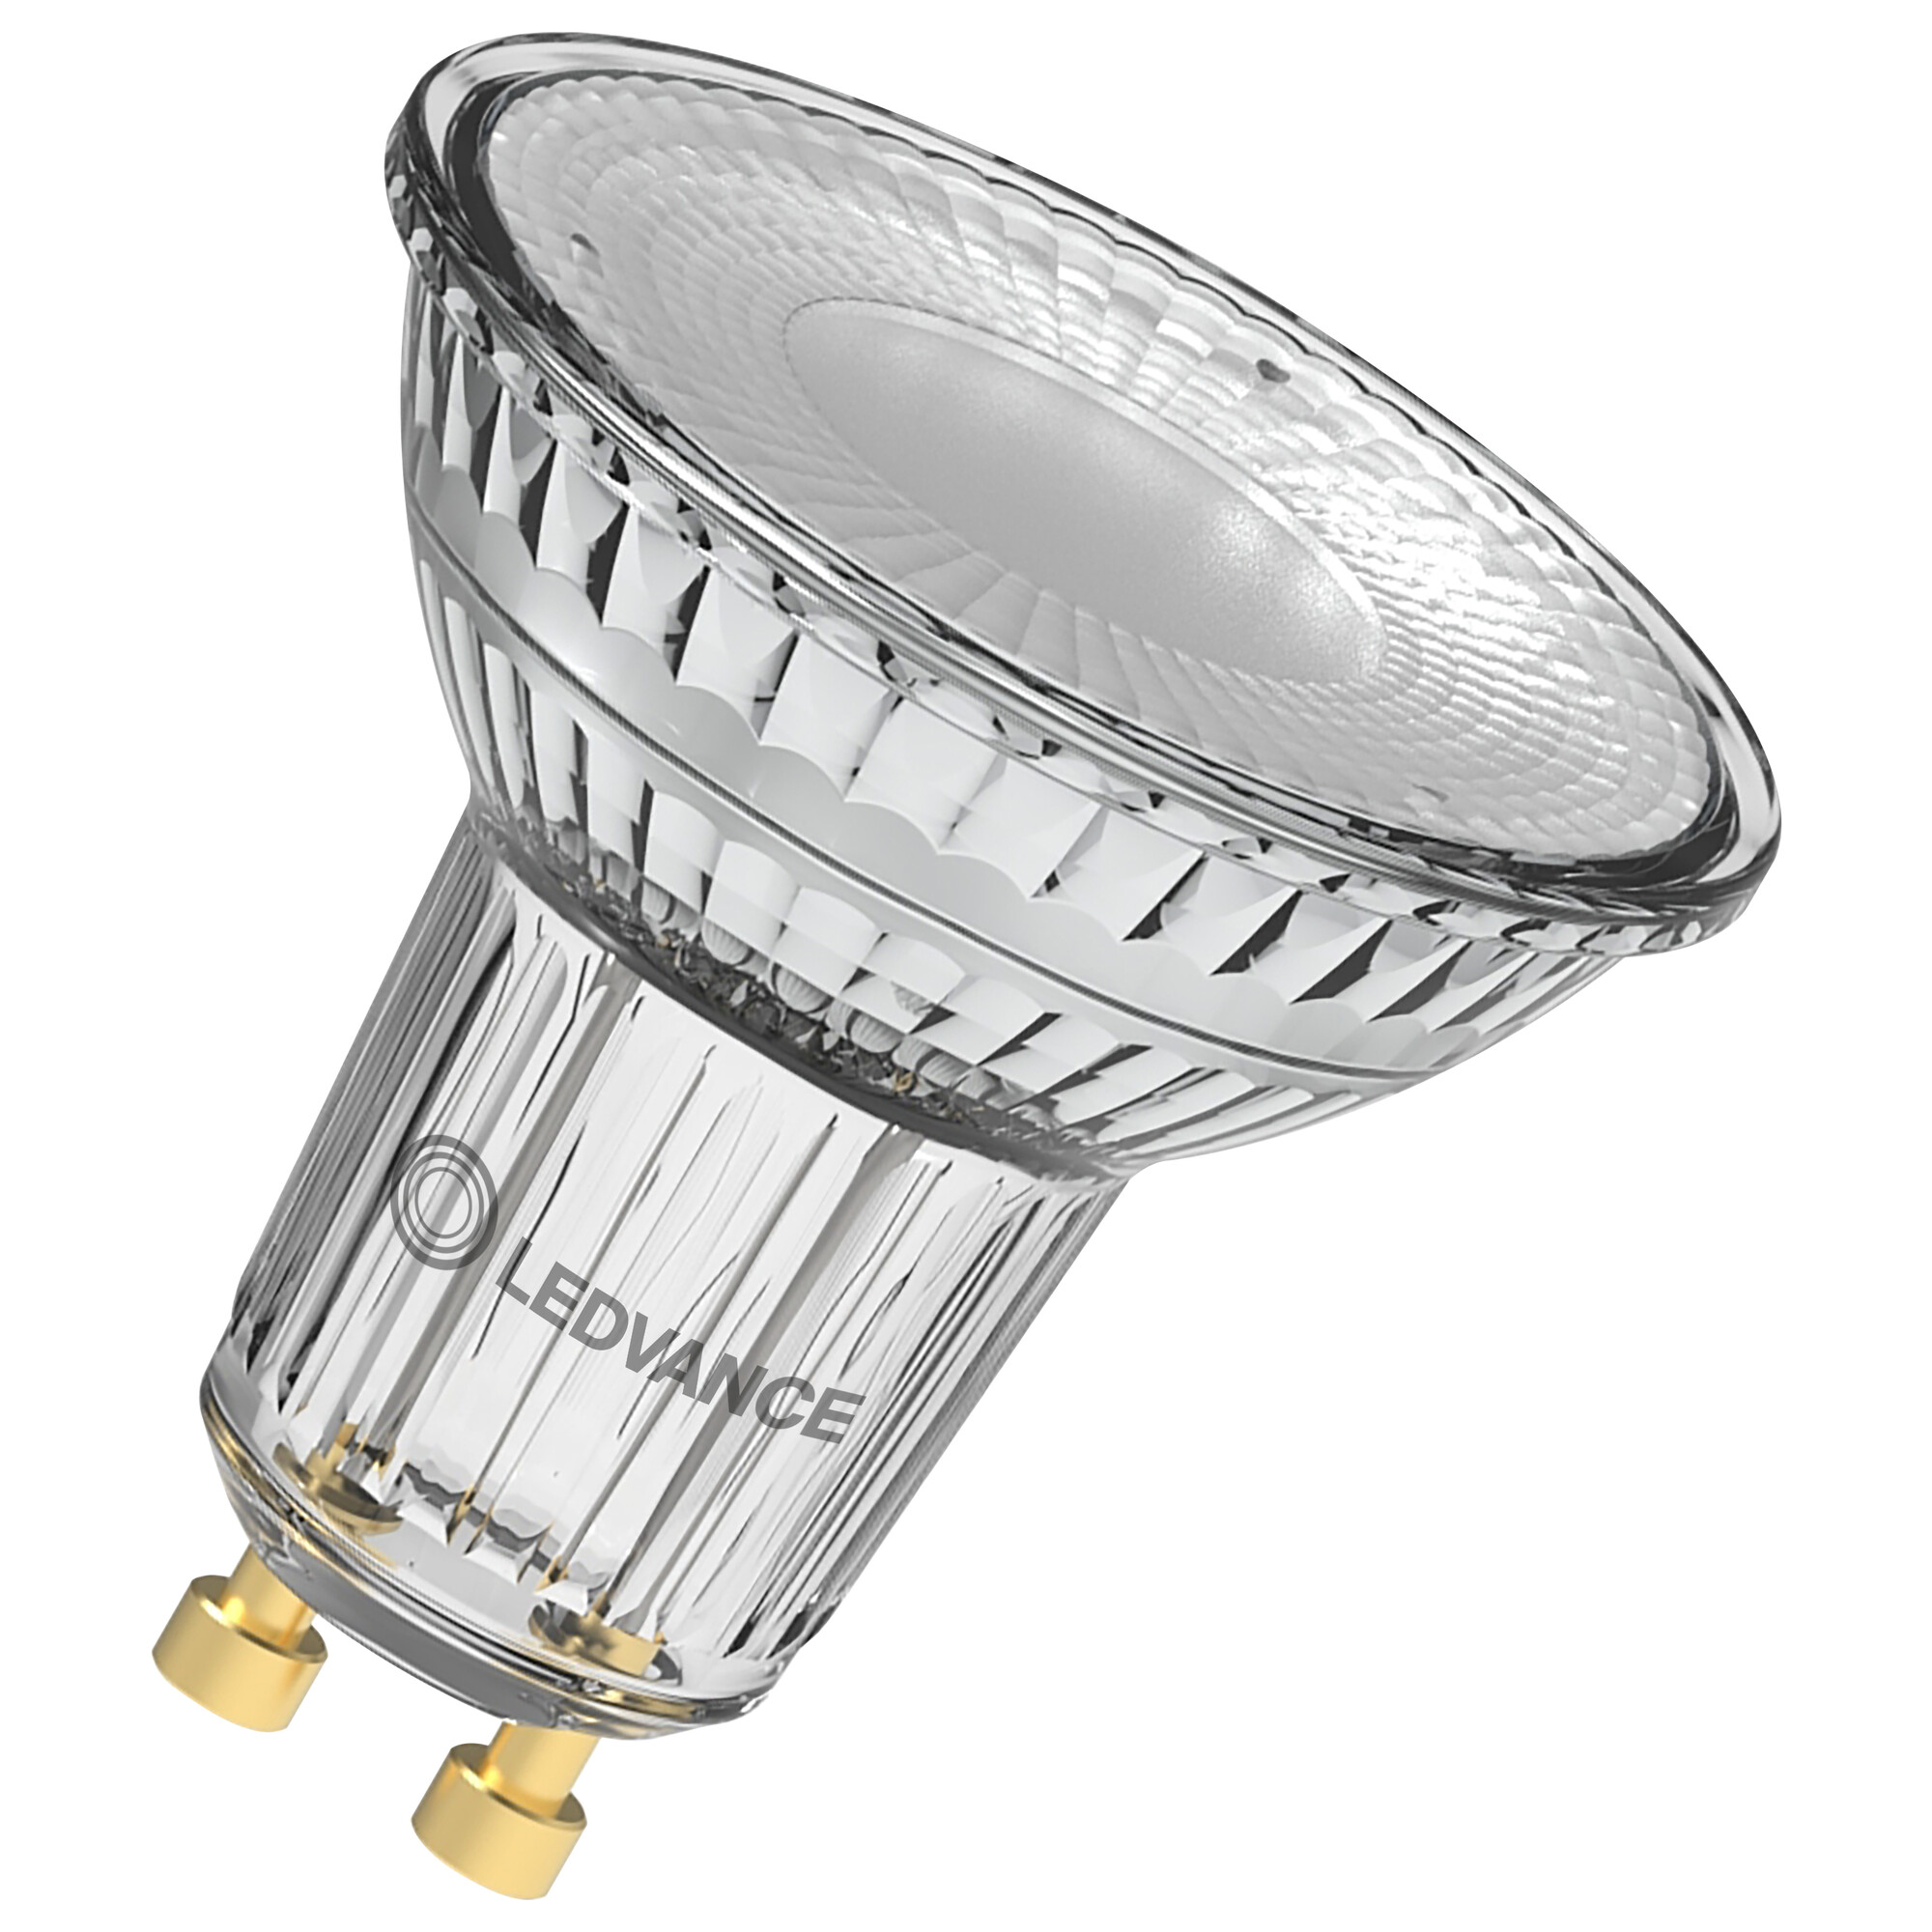 Ledvance LED PAR16 P Reflektorlampe 7,9 Watt 120 Grad GU10 927 warmweiß extra dimmbar